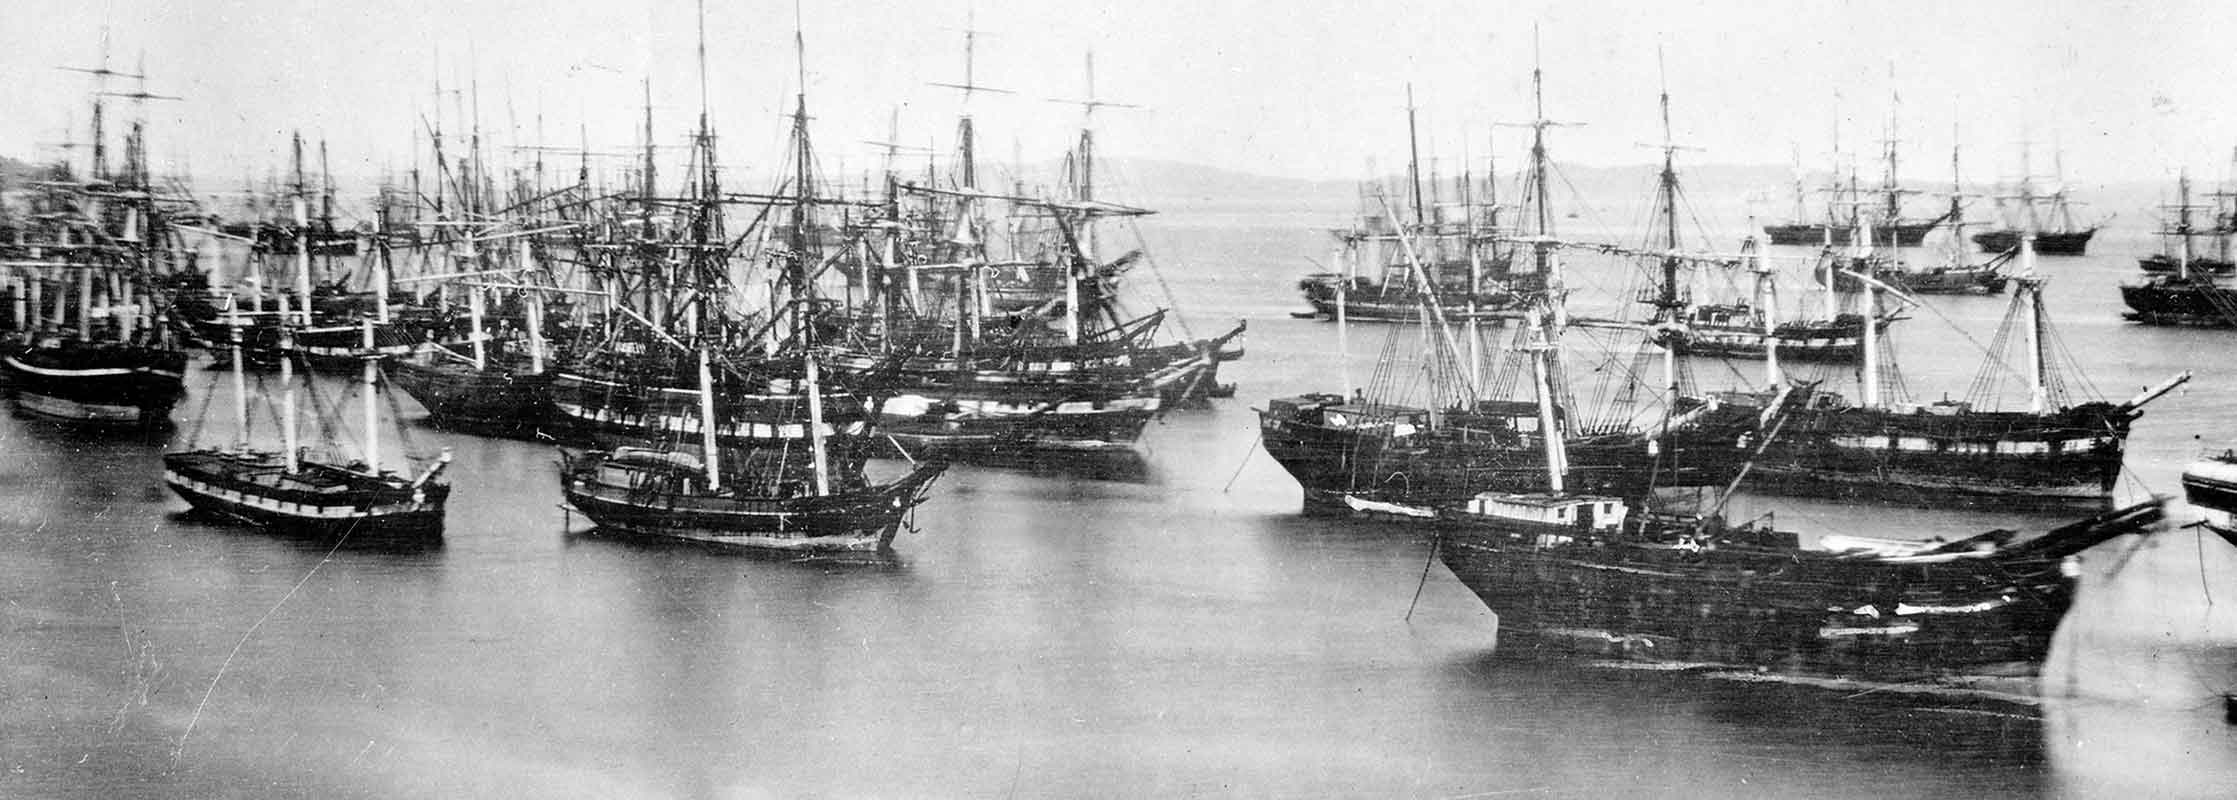 У причалов Сан-Франциско скопилось множество брошенных кораблей